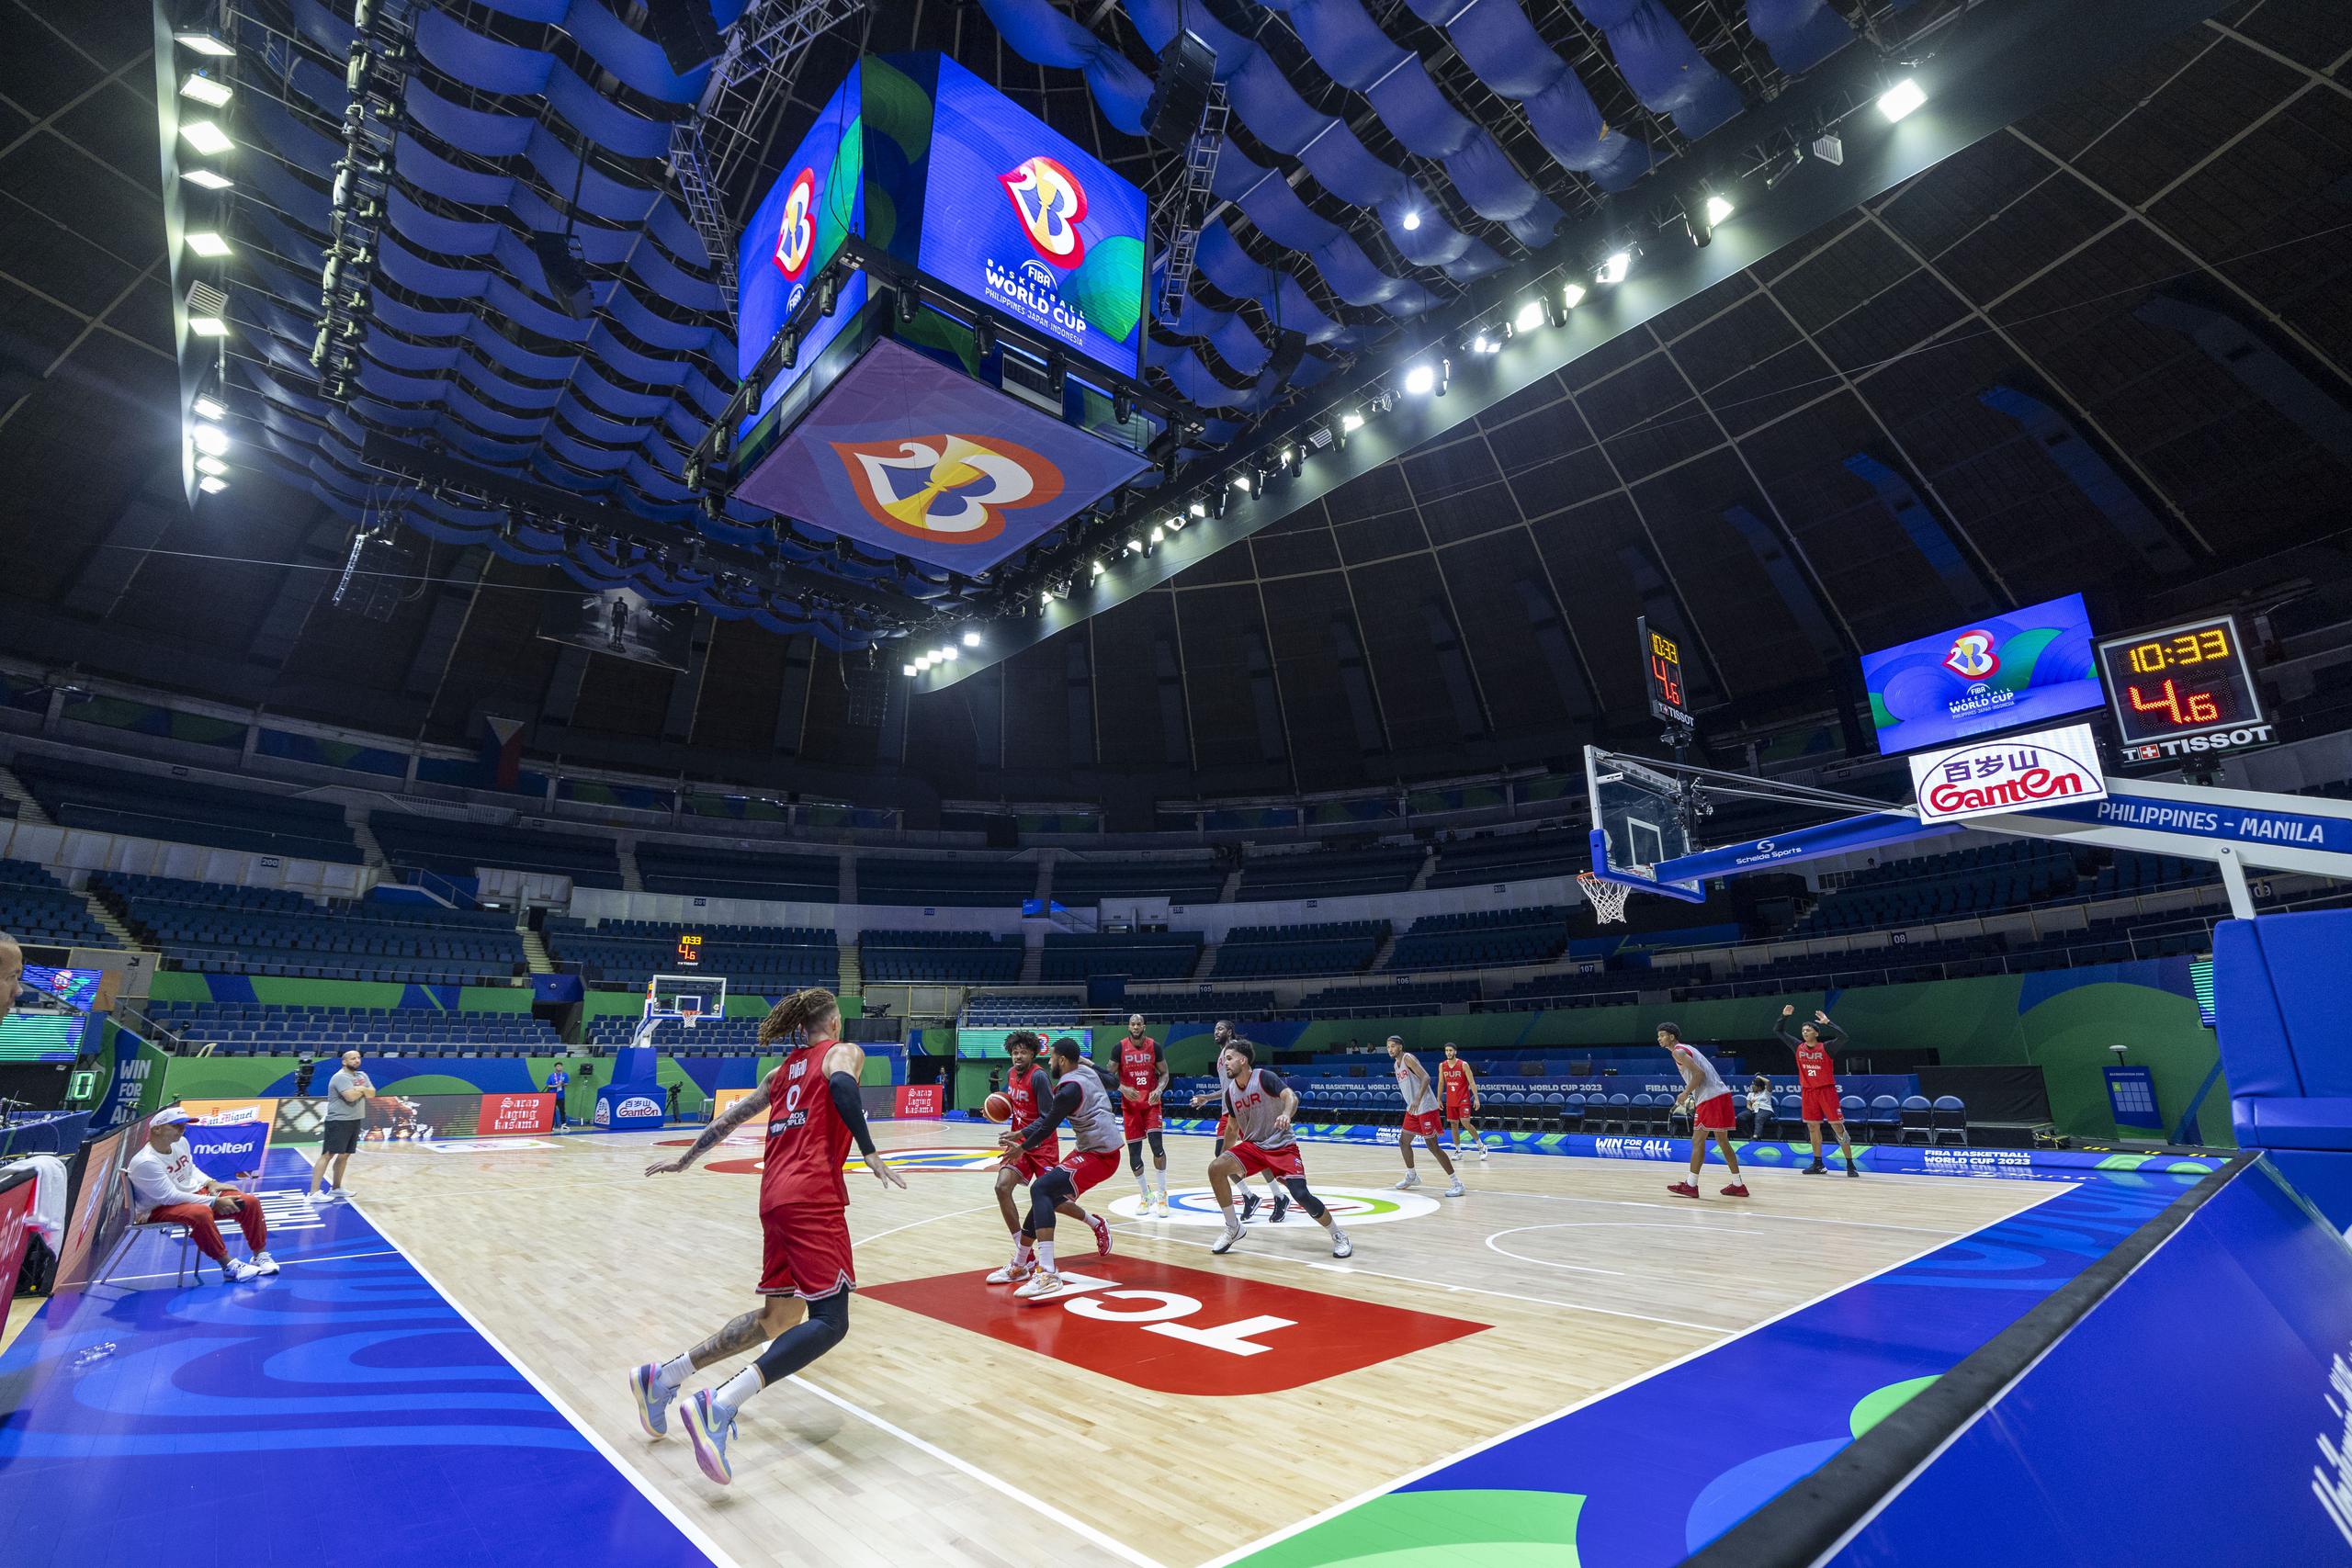 El Equipo Nacional realiza una práctica sobre el Smart Araneta Coliseum en el área de Cubao en Quezon City, en Manila. Será allí donde jugarán sus partidos de primera ronda desde el sábado.